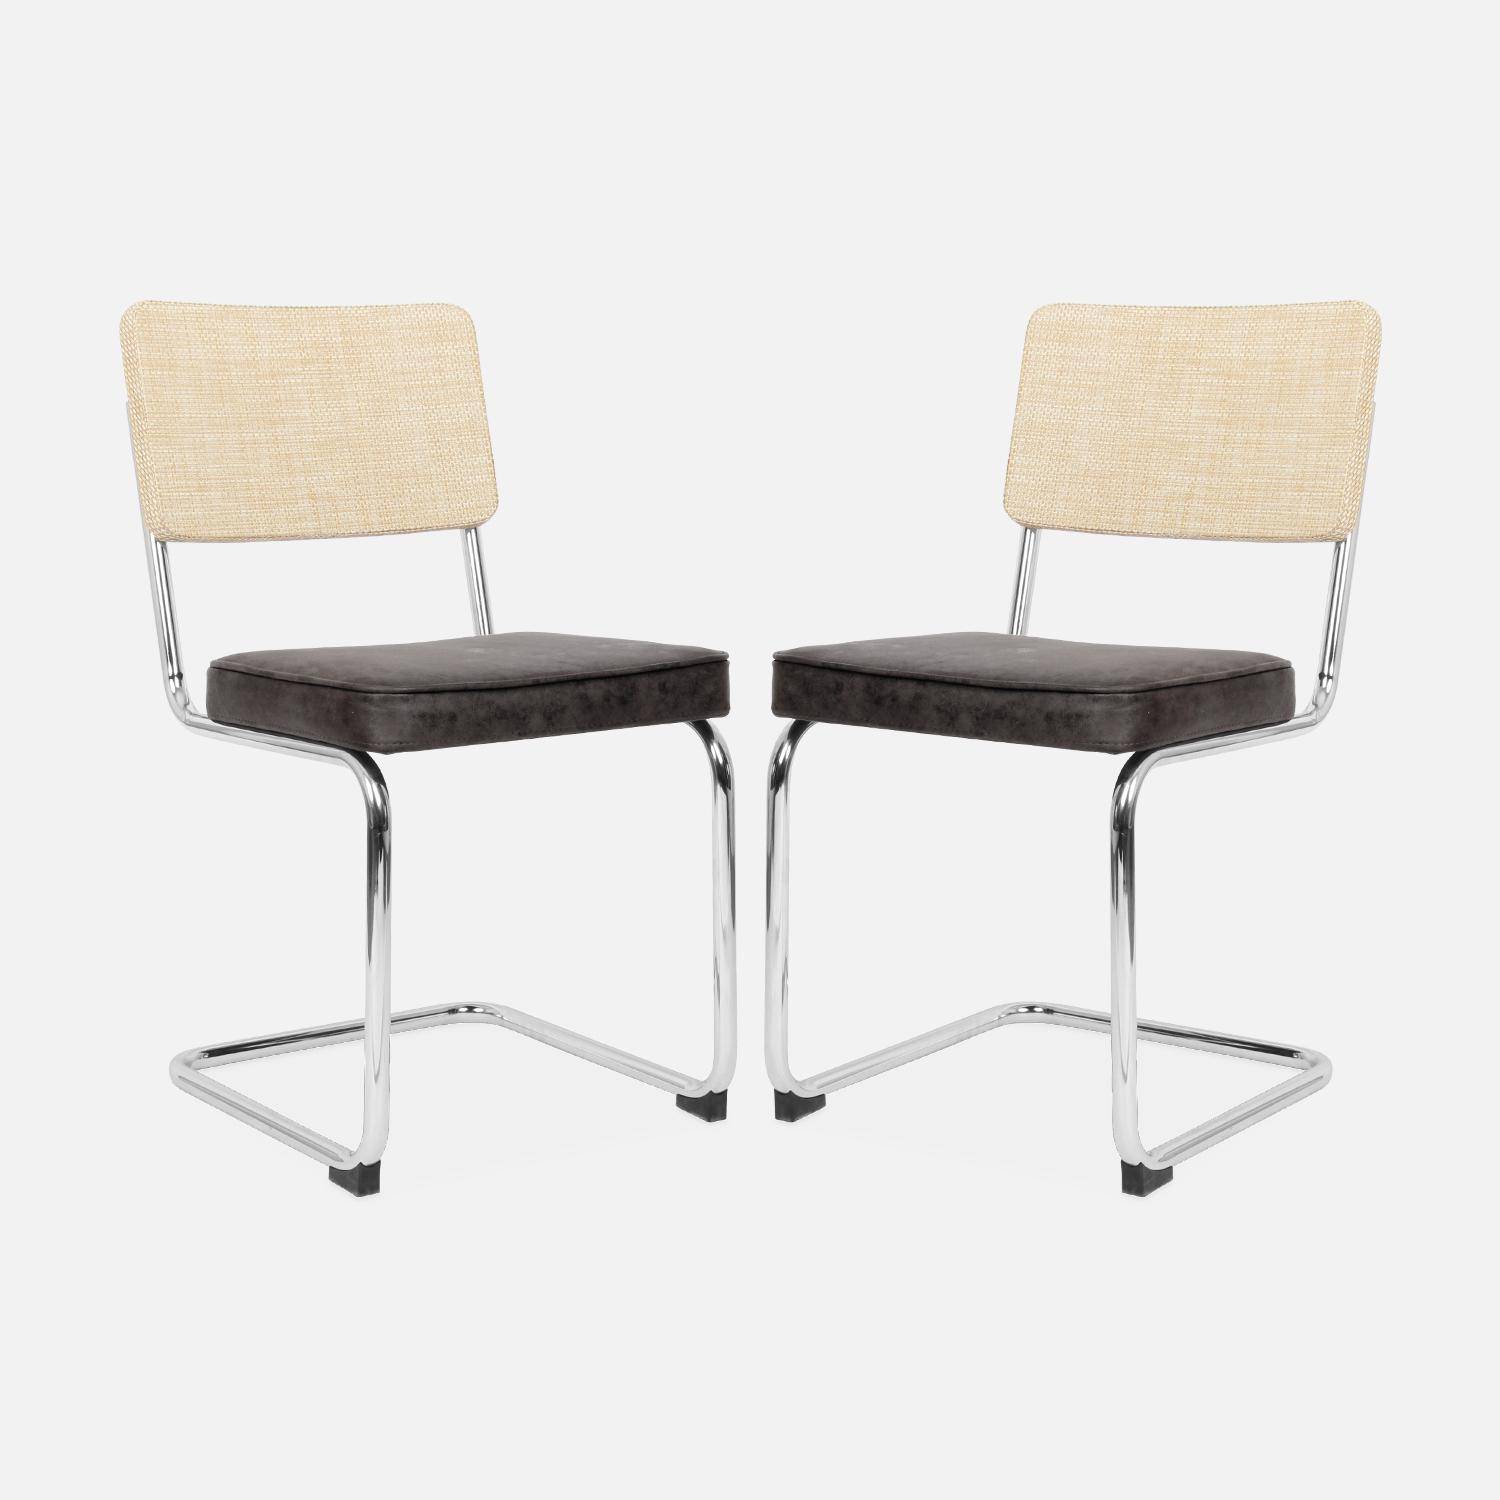 2 chaises cantilever - Maja - tissu marron foncé et résine effet rotin, 46 x 54,5 x 84,5cm   Photo5